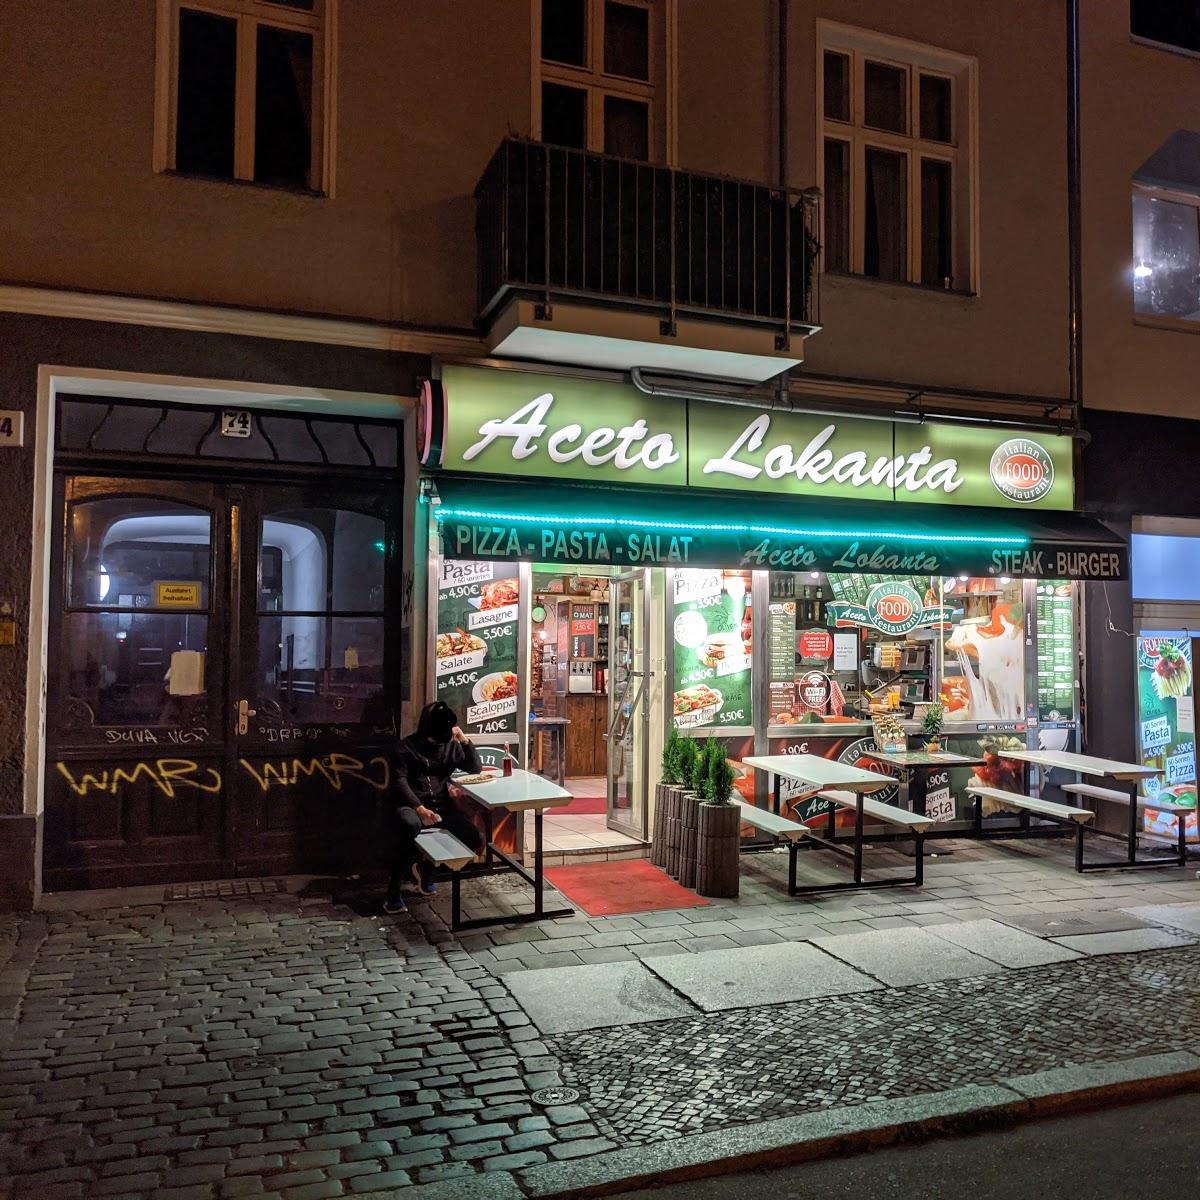 Restaurant "Aceto Lokanta" in Berlin